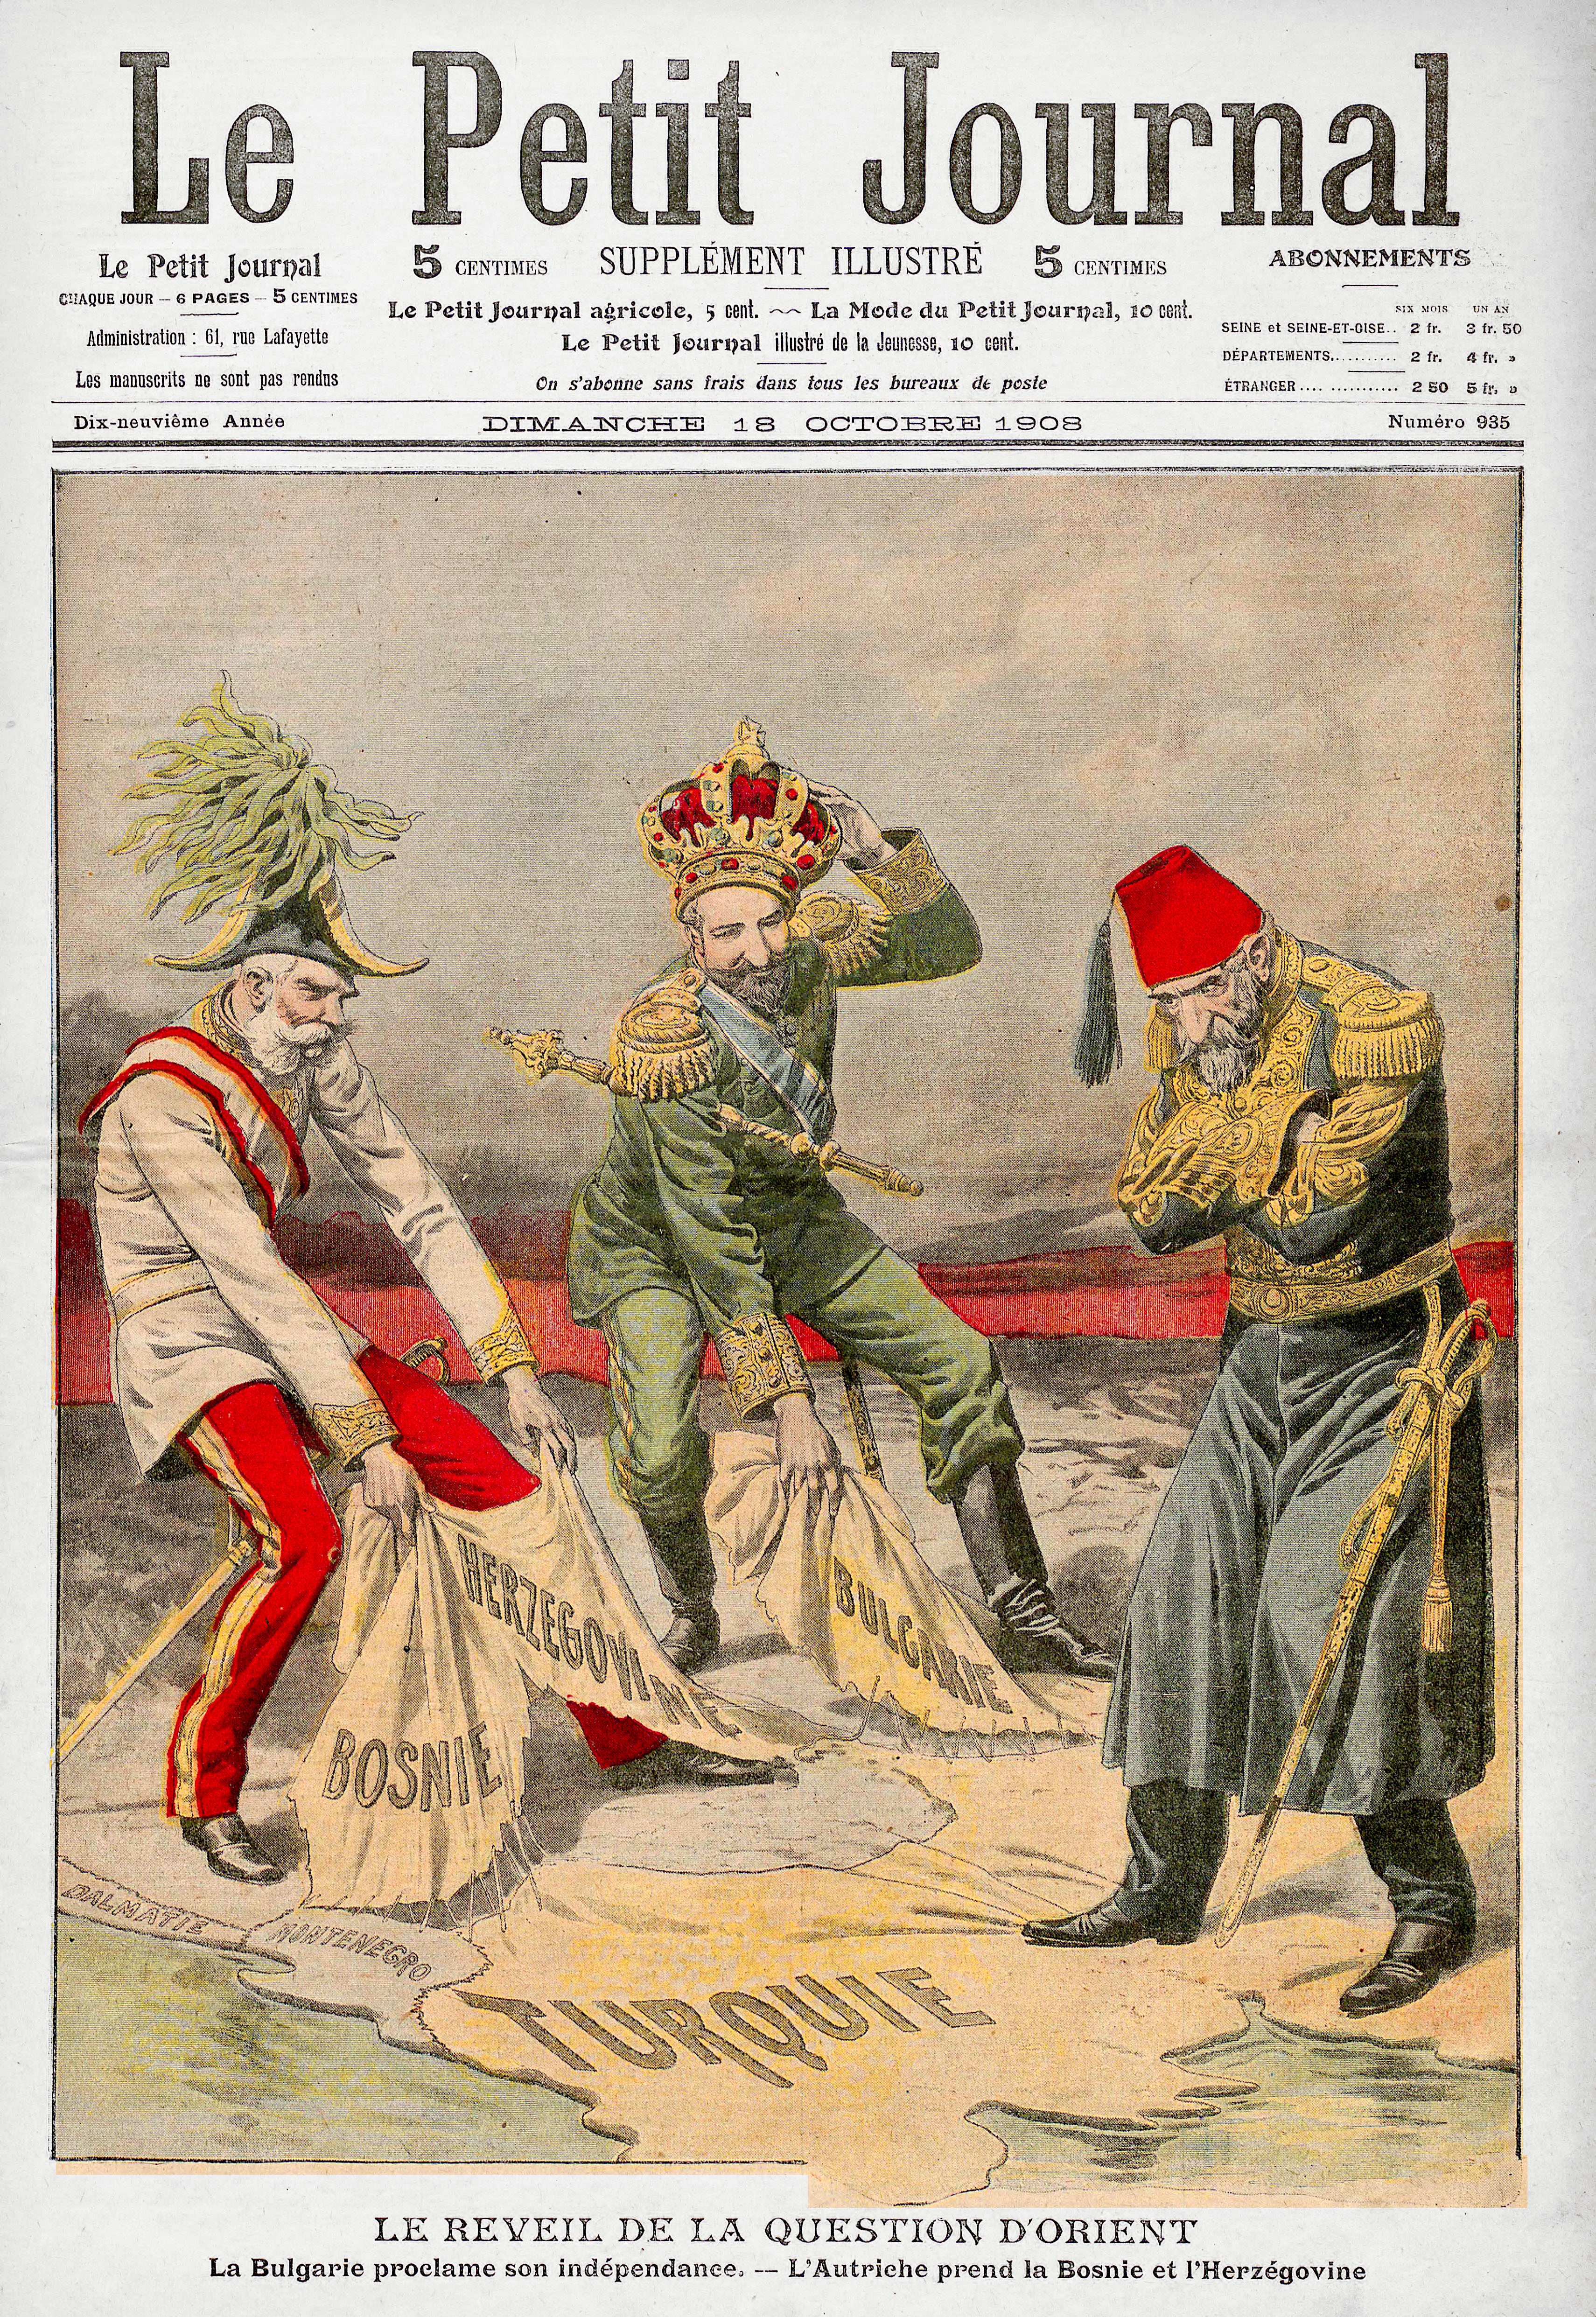 Франц Иосиф и Фердинанд отбирают турецкие земли у беспомощного султана. Обложка Le Petit Journal 18 октября 1908